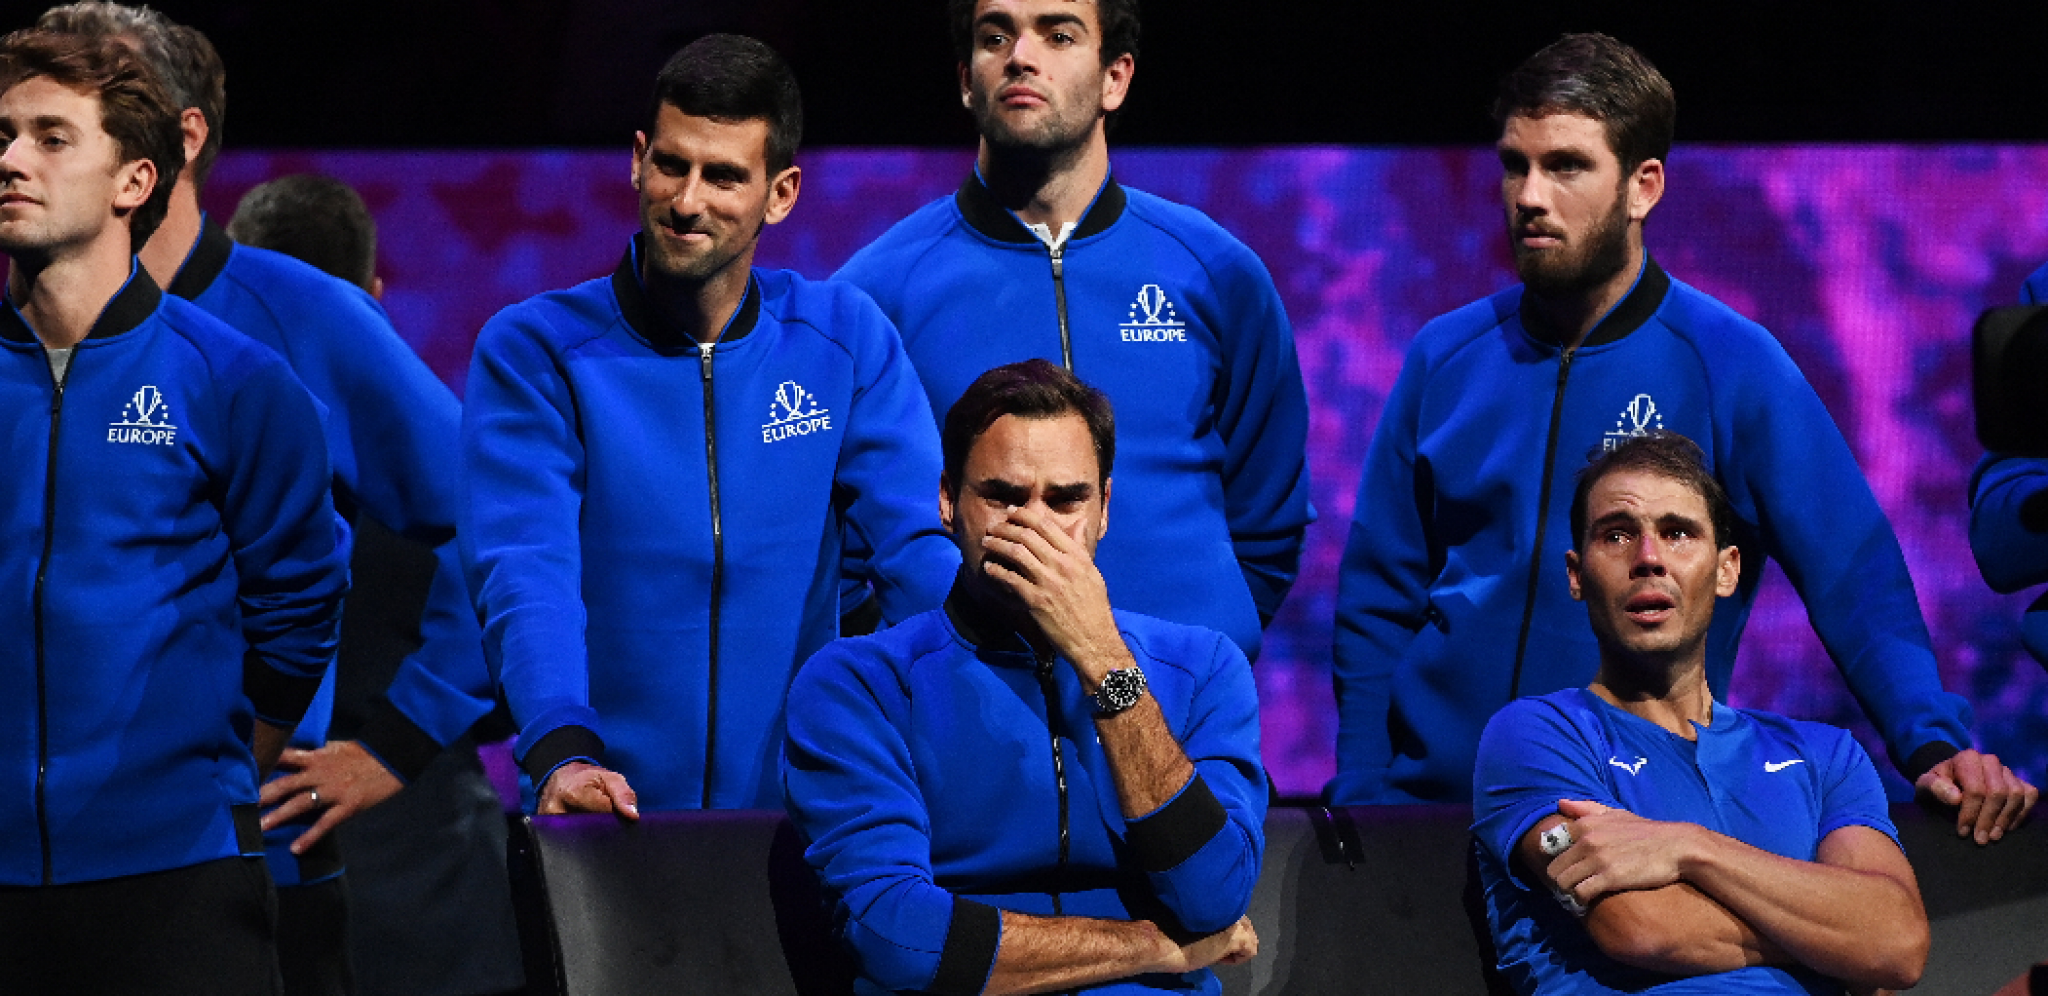 OTKRIVENI DETALJI Evo kako su Đoković i Nadal rasplakali Federera, Švajcarac briznuo u plač kada ih je video (FOTO)